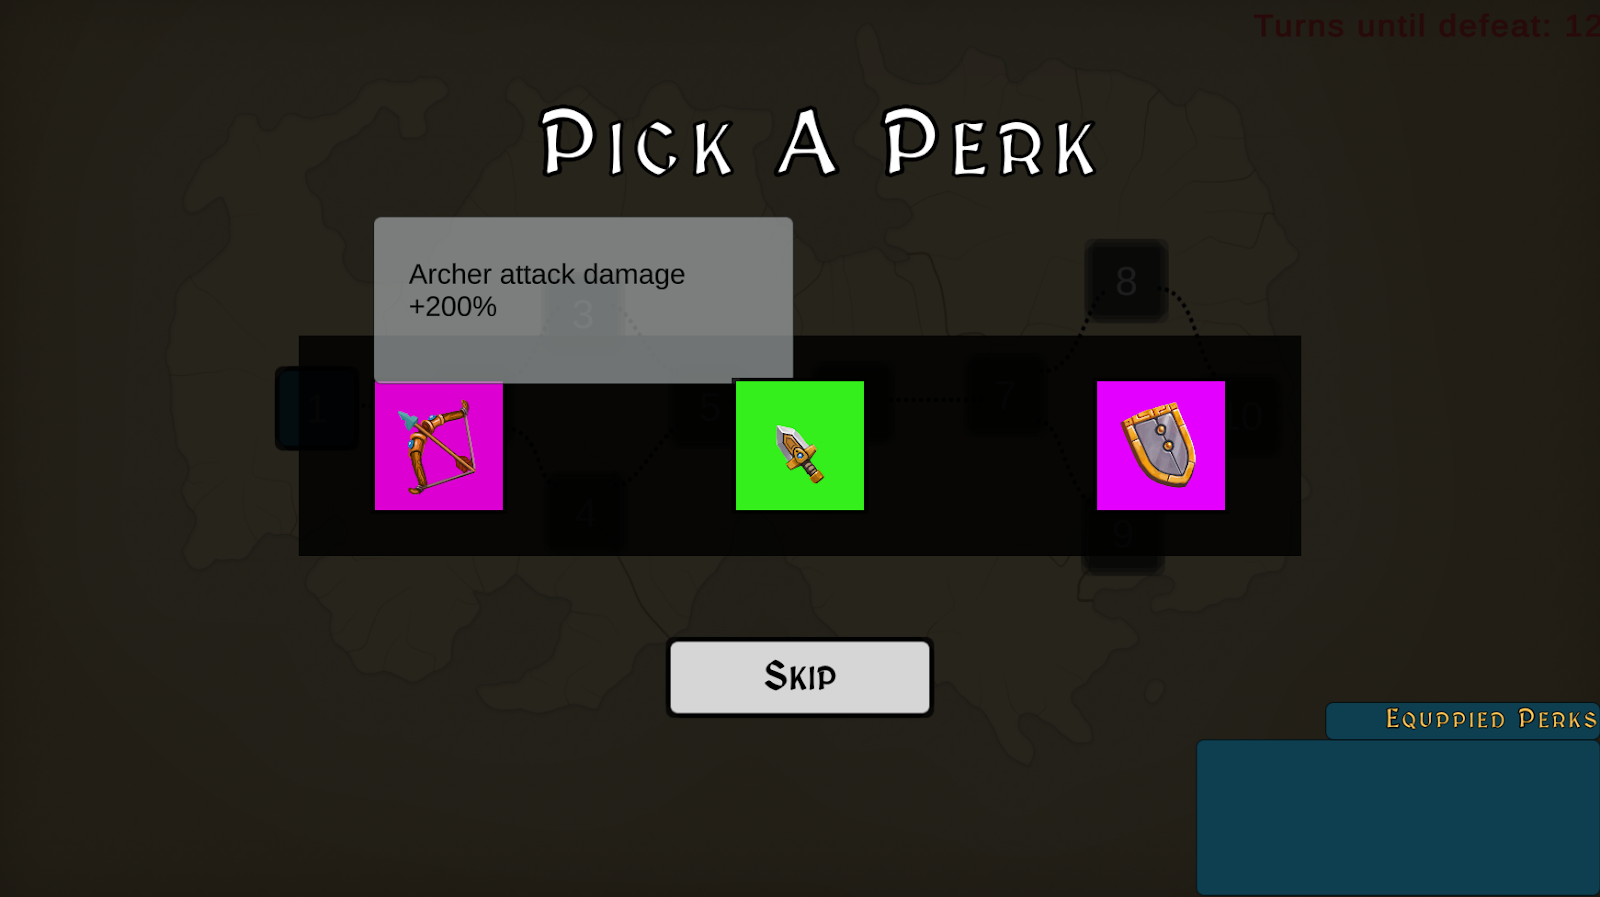 Perk Chooser from 3 random options